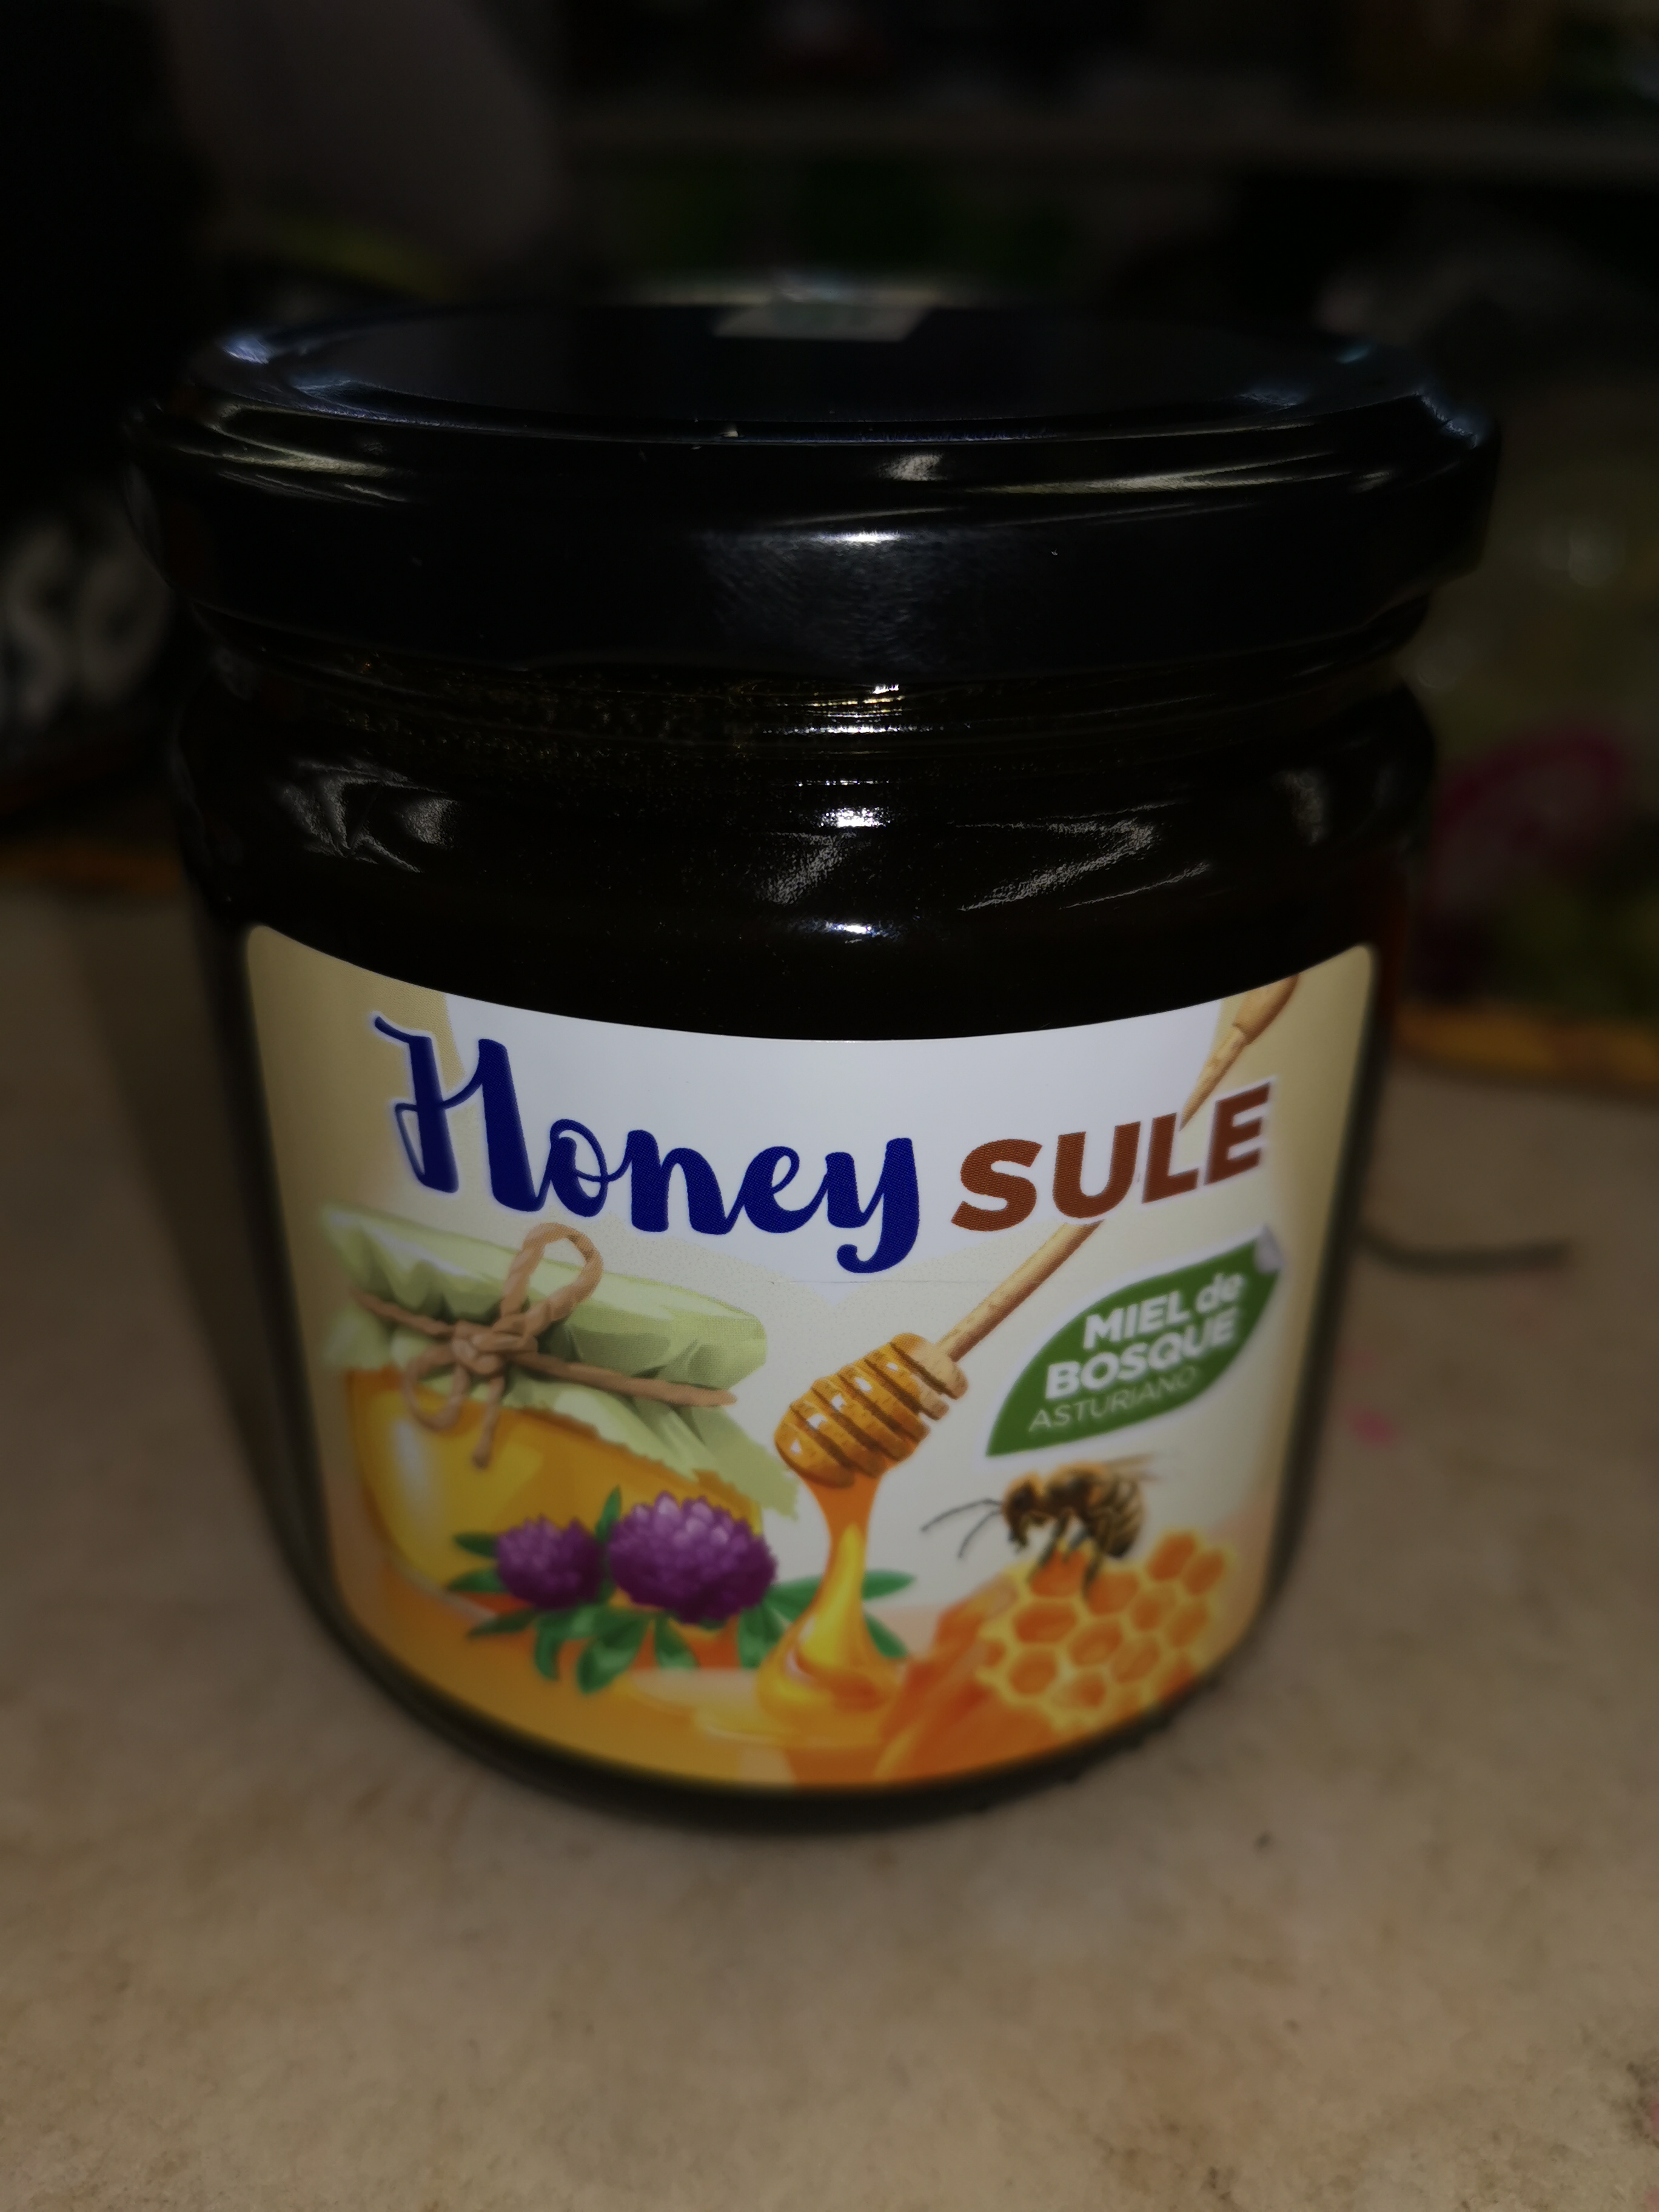 Honey sule - Miel de bosque